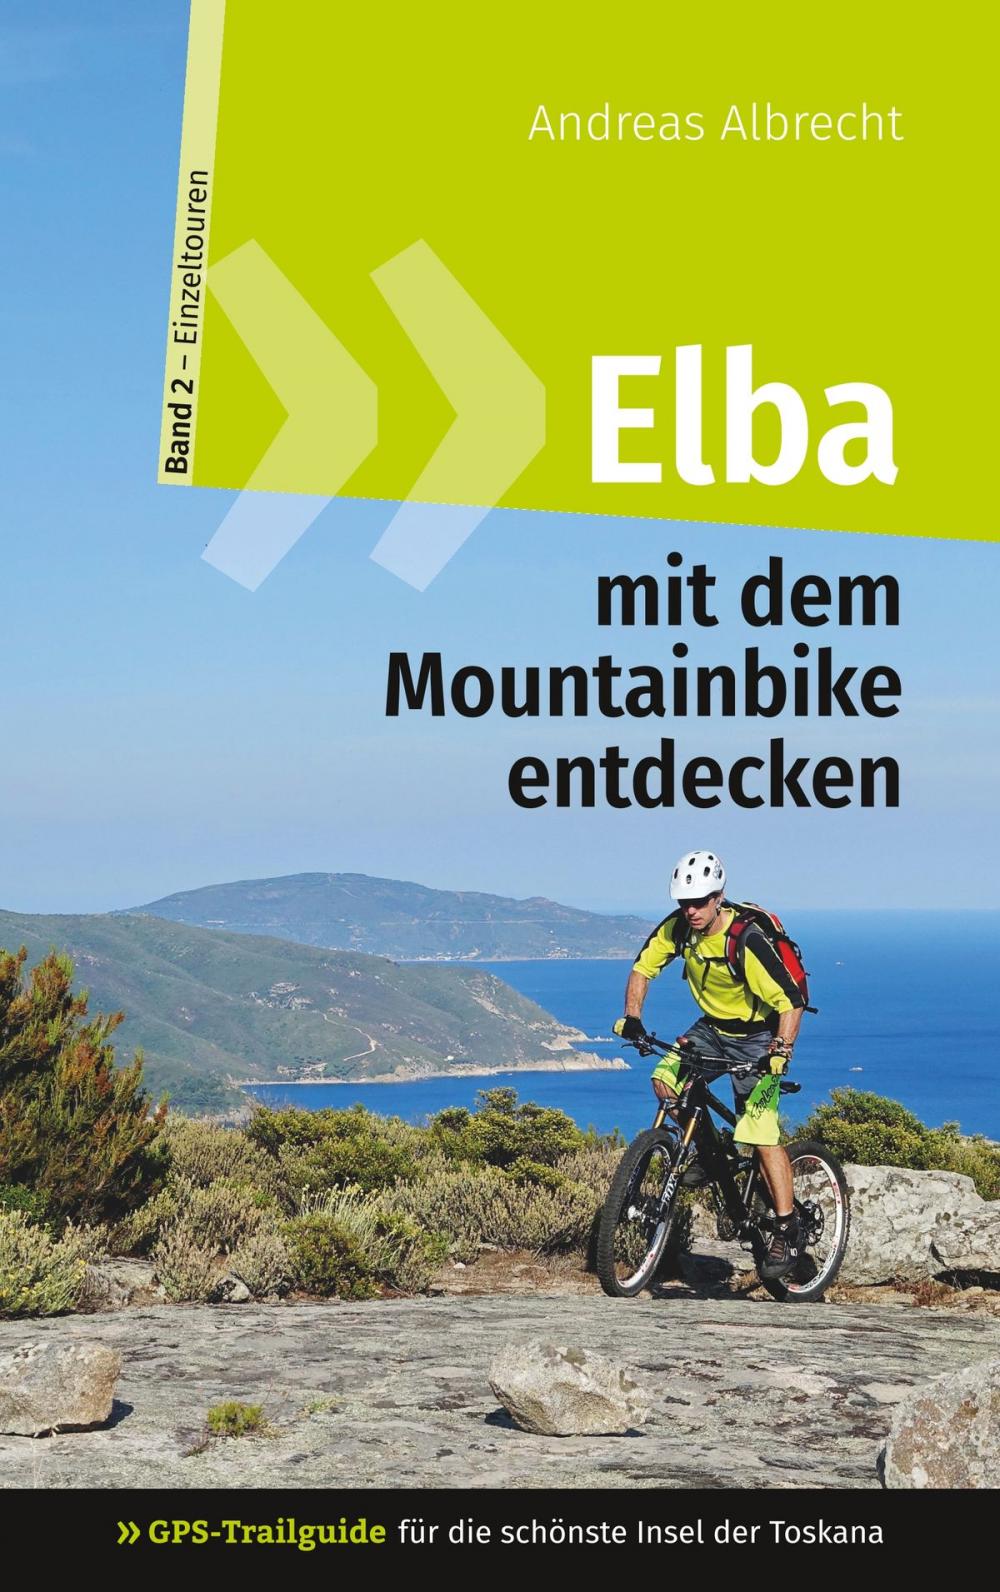 Big bigCover of Elba mit dem Mountainbike entdecken 2 - GPS-Trailguide für die schönste Insel der Toskana